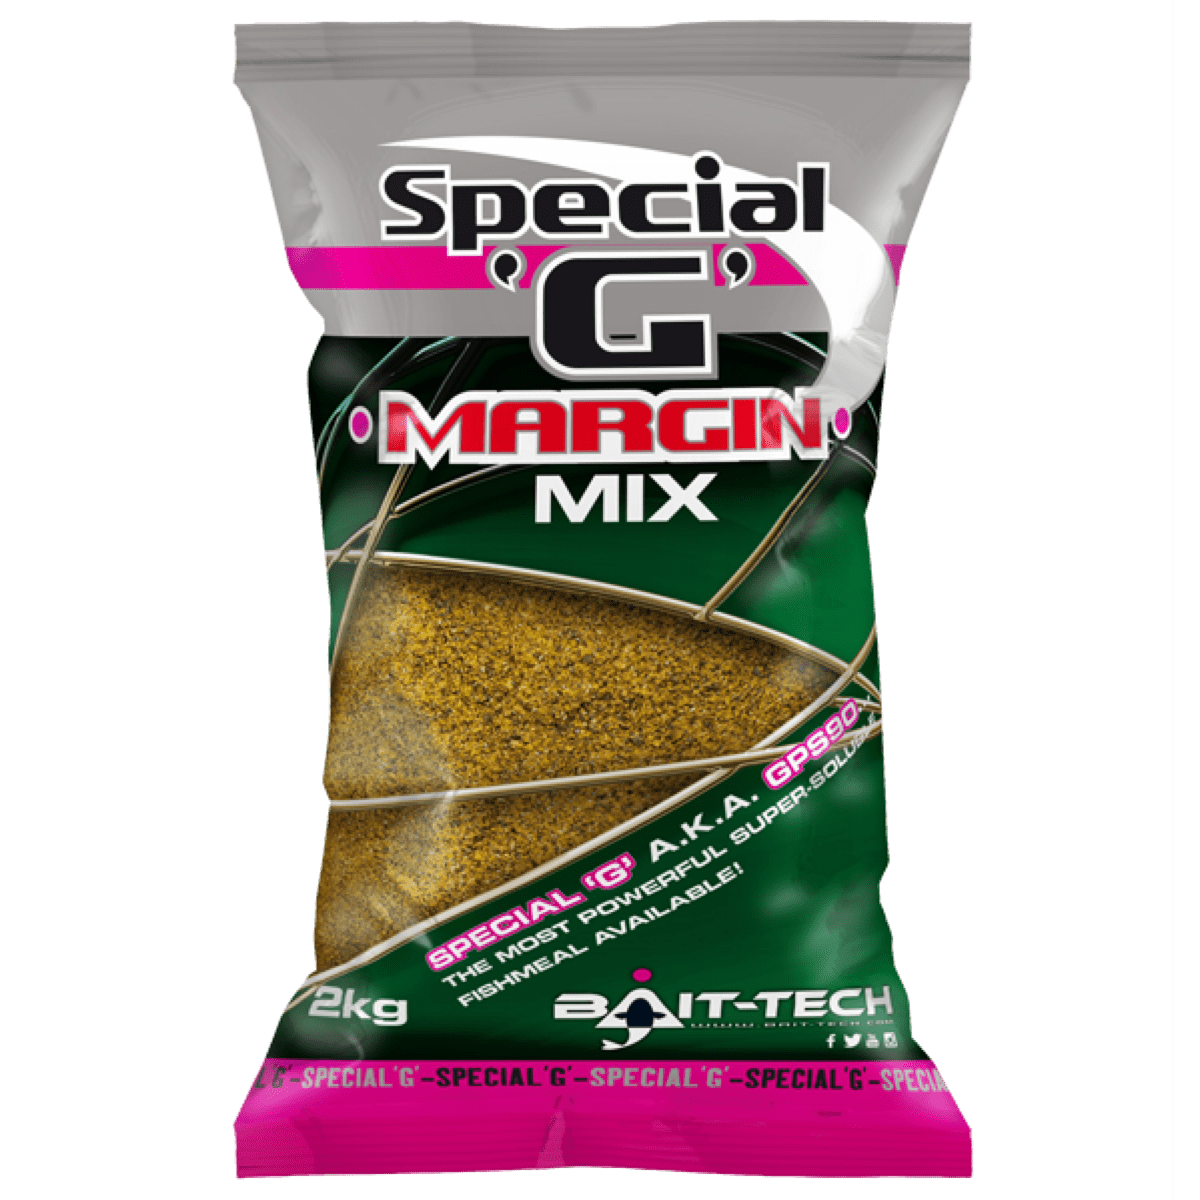 Bait-Tech Special G Margin Mix 2kg